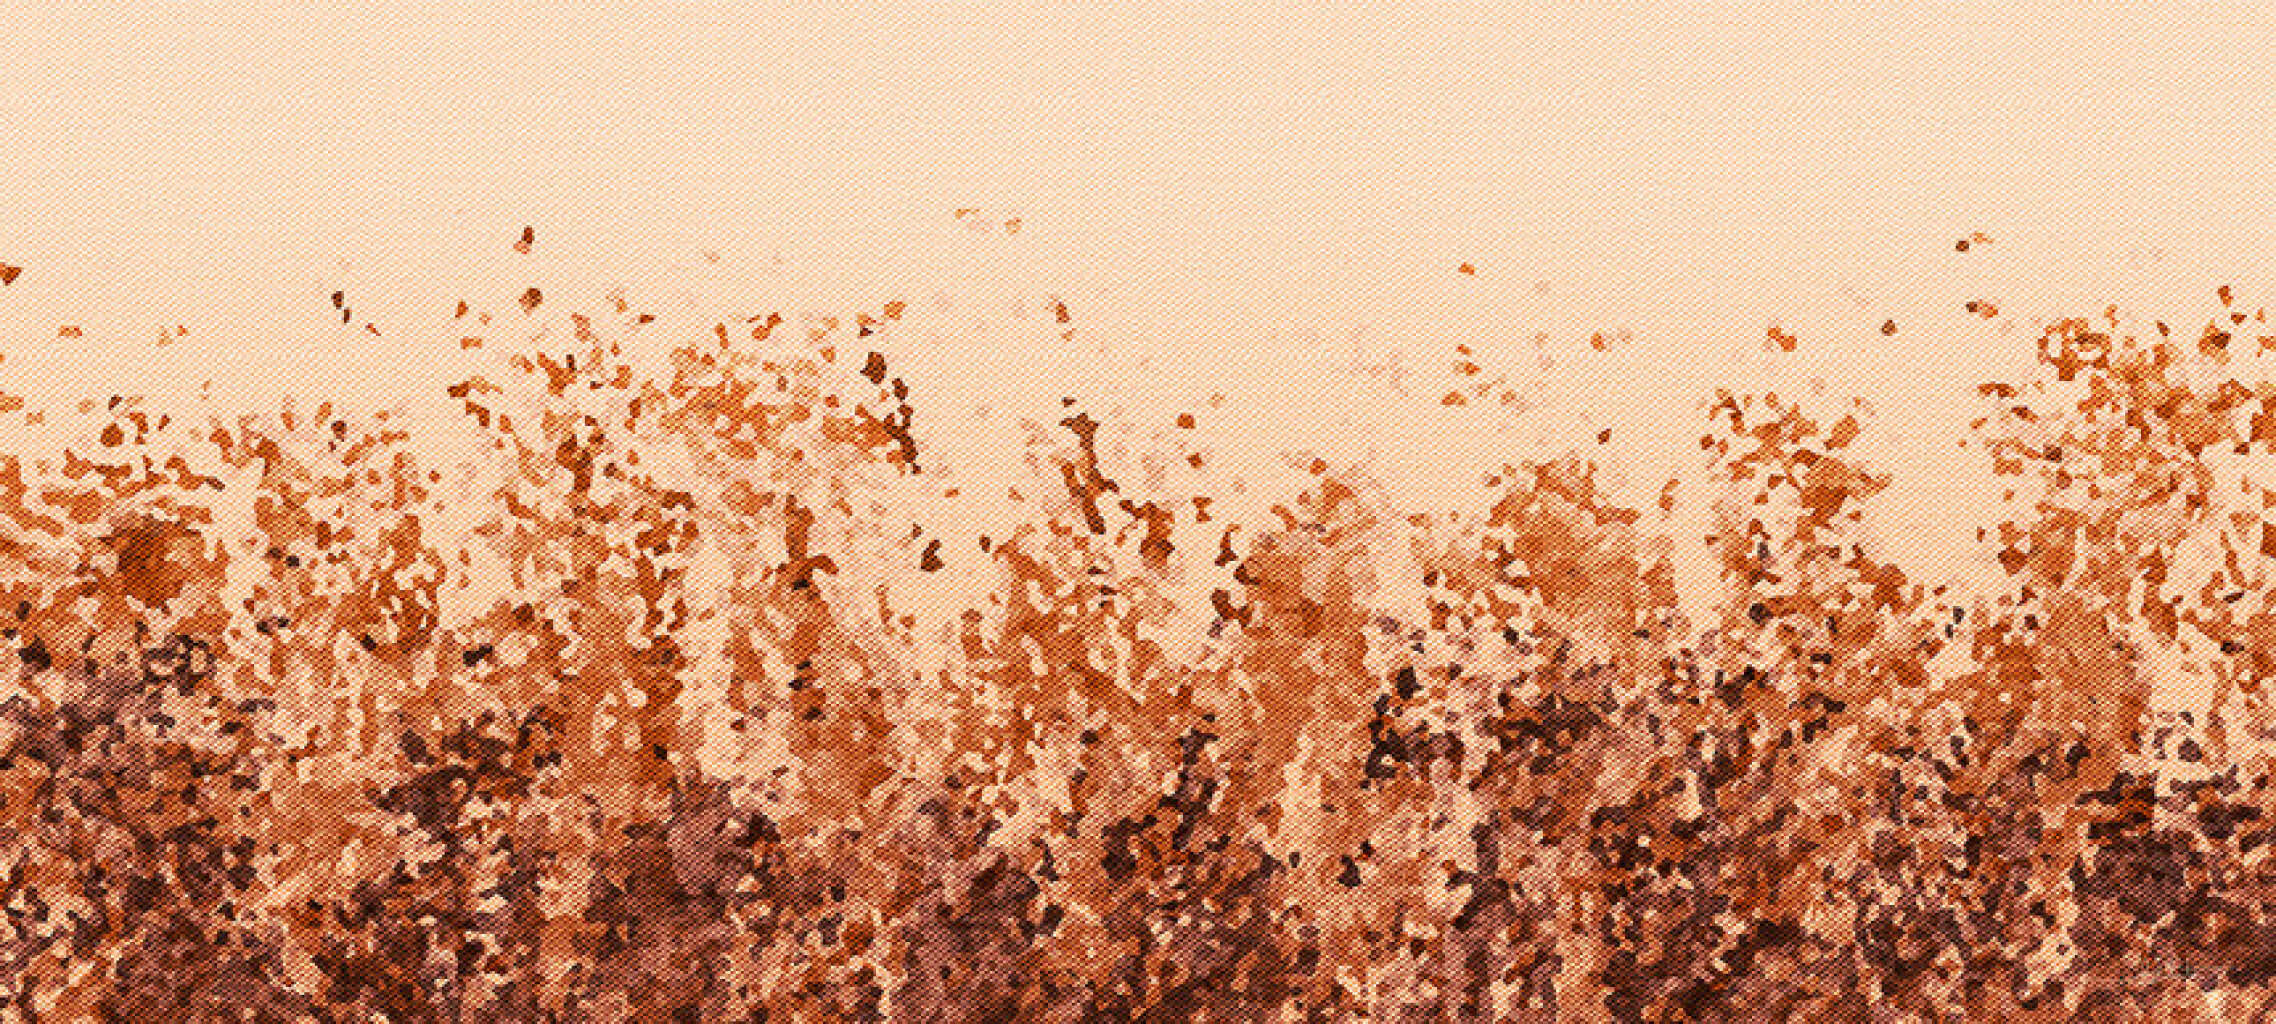 Quadro Abstrac Grains por Joel Santos -  CATEGORIAS